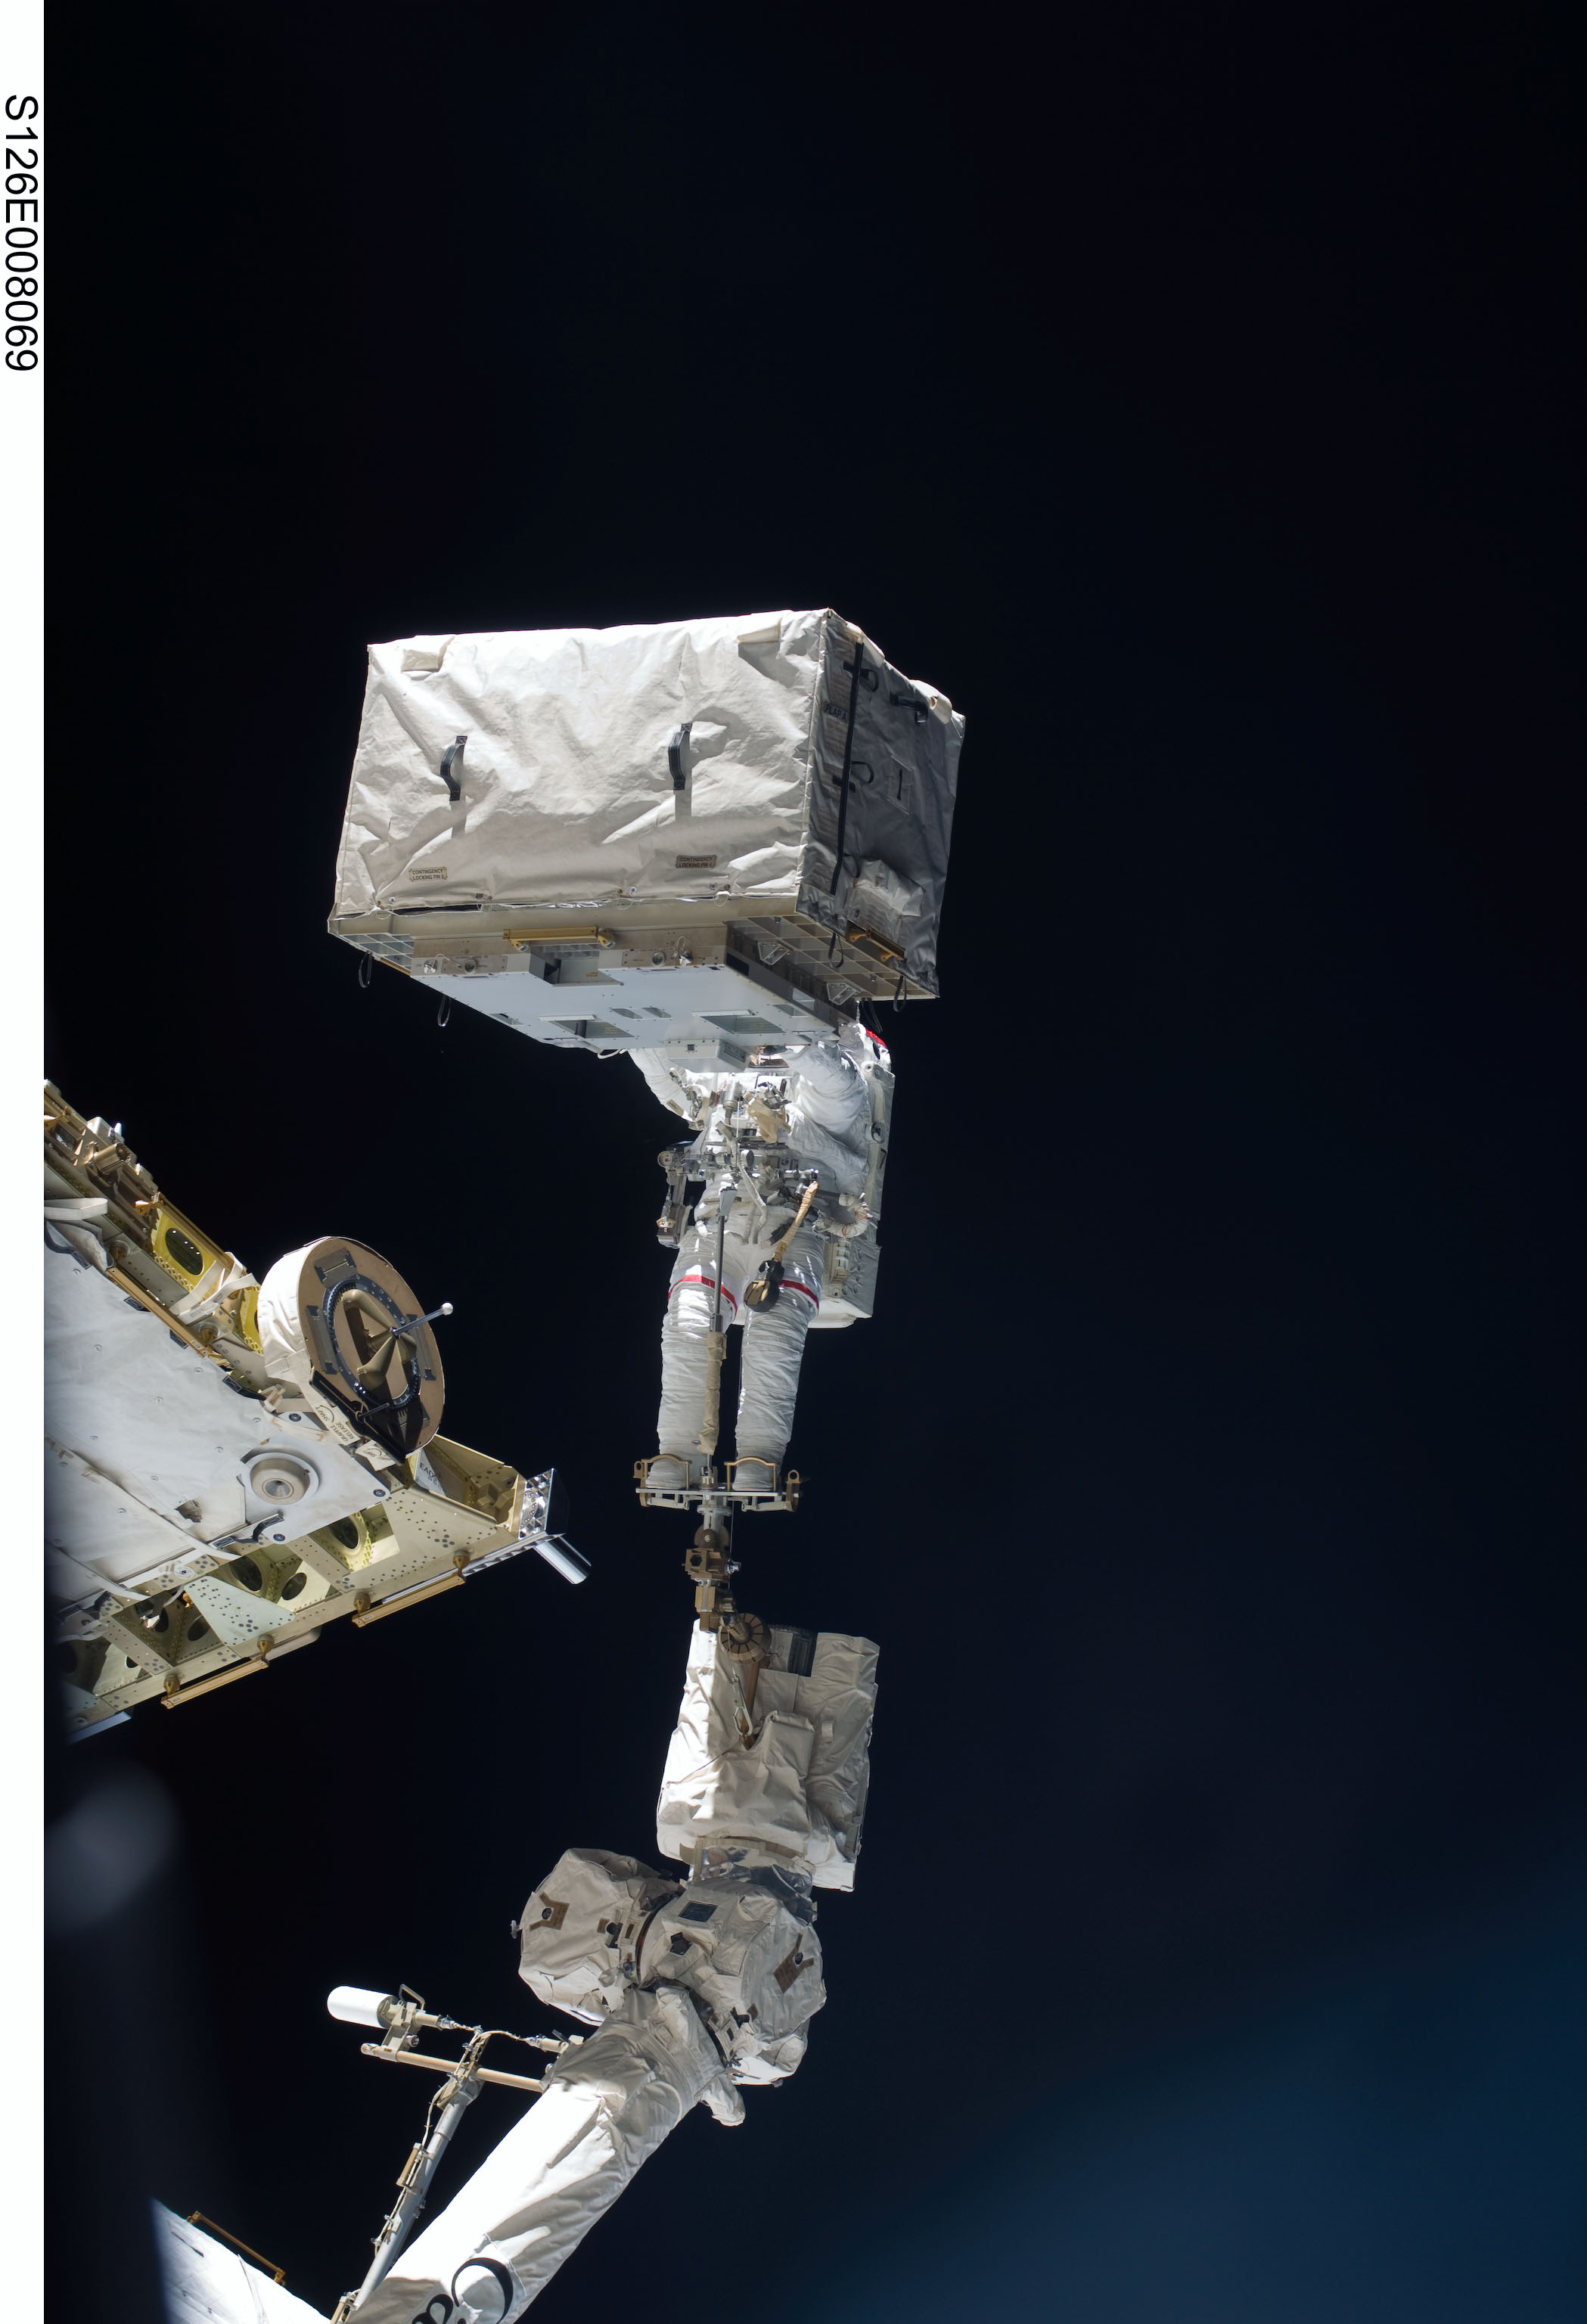 Mise à niveau d’une tête d’astronaute pendant une sortie dans l’espace